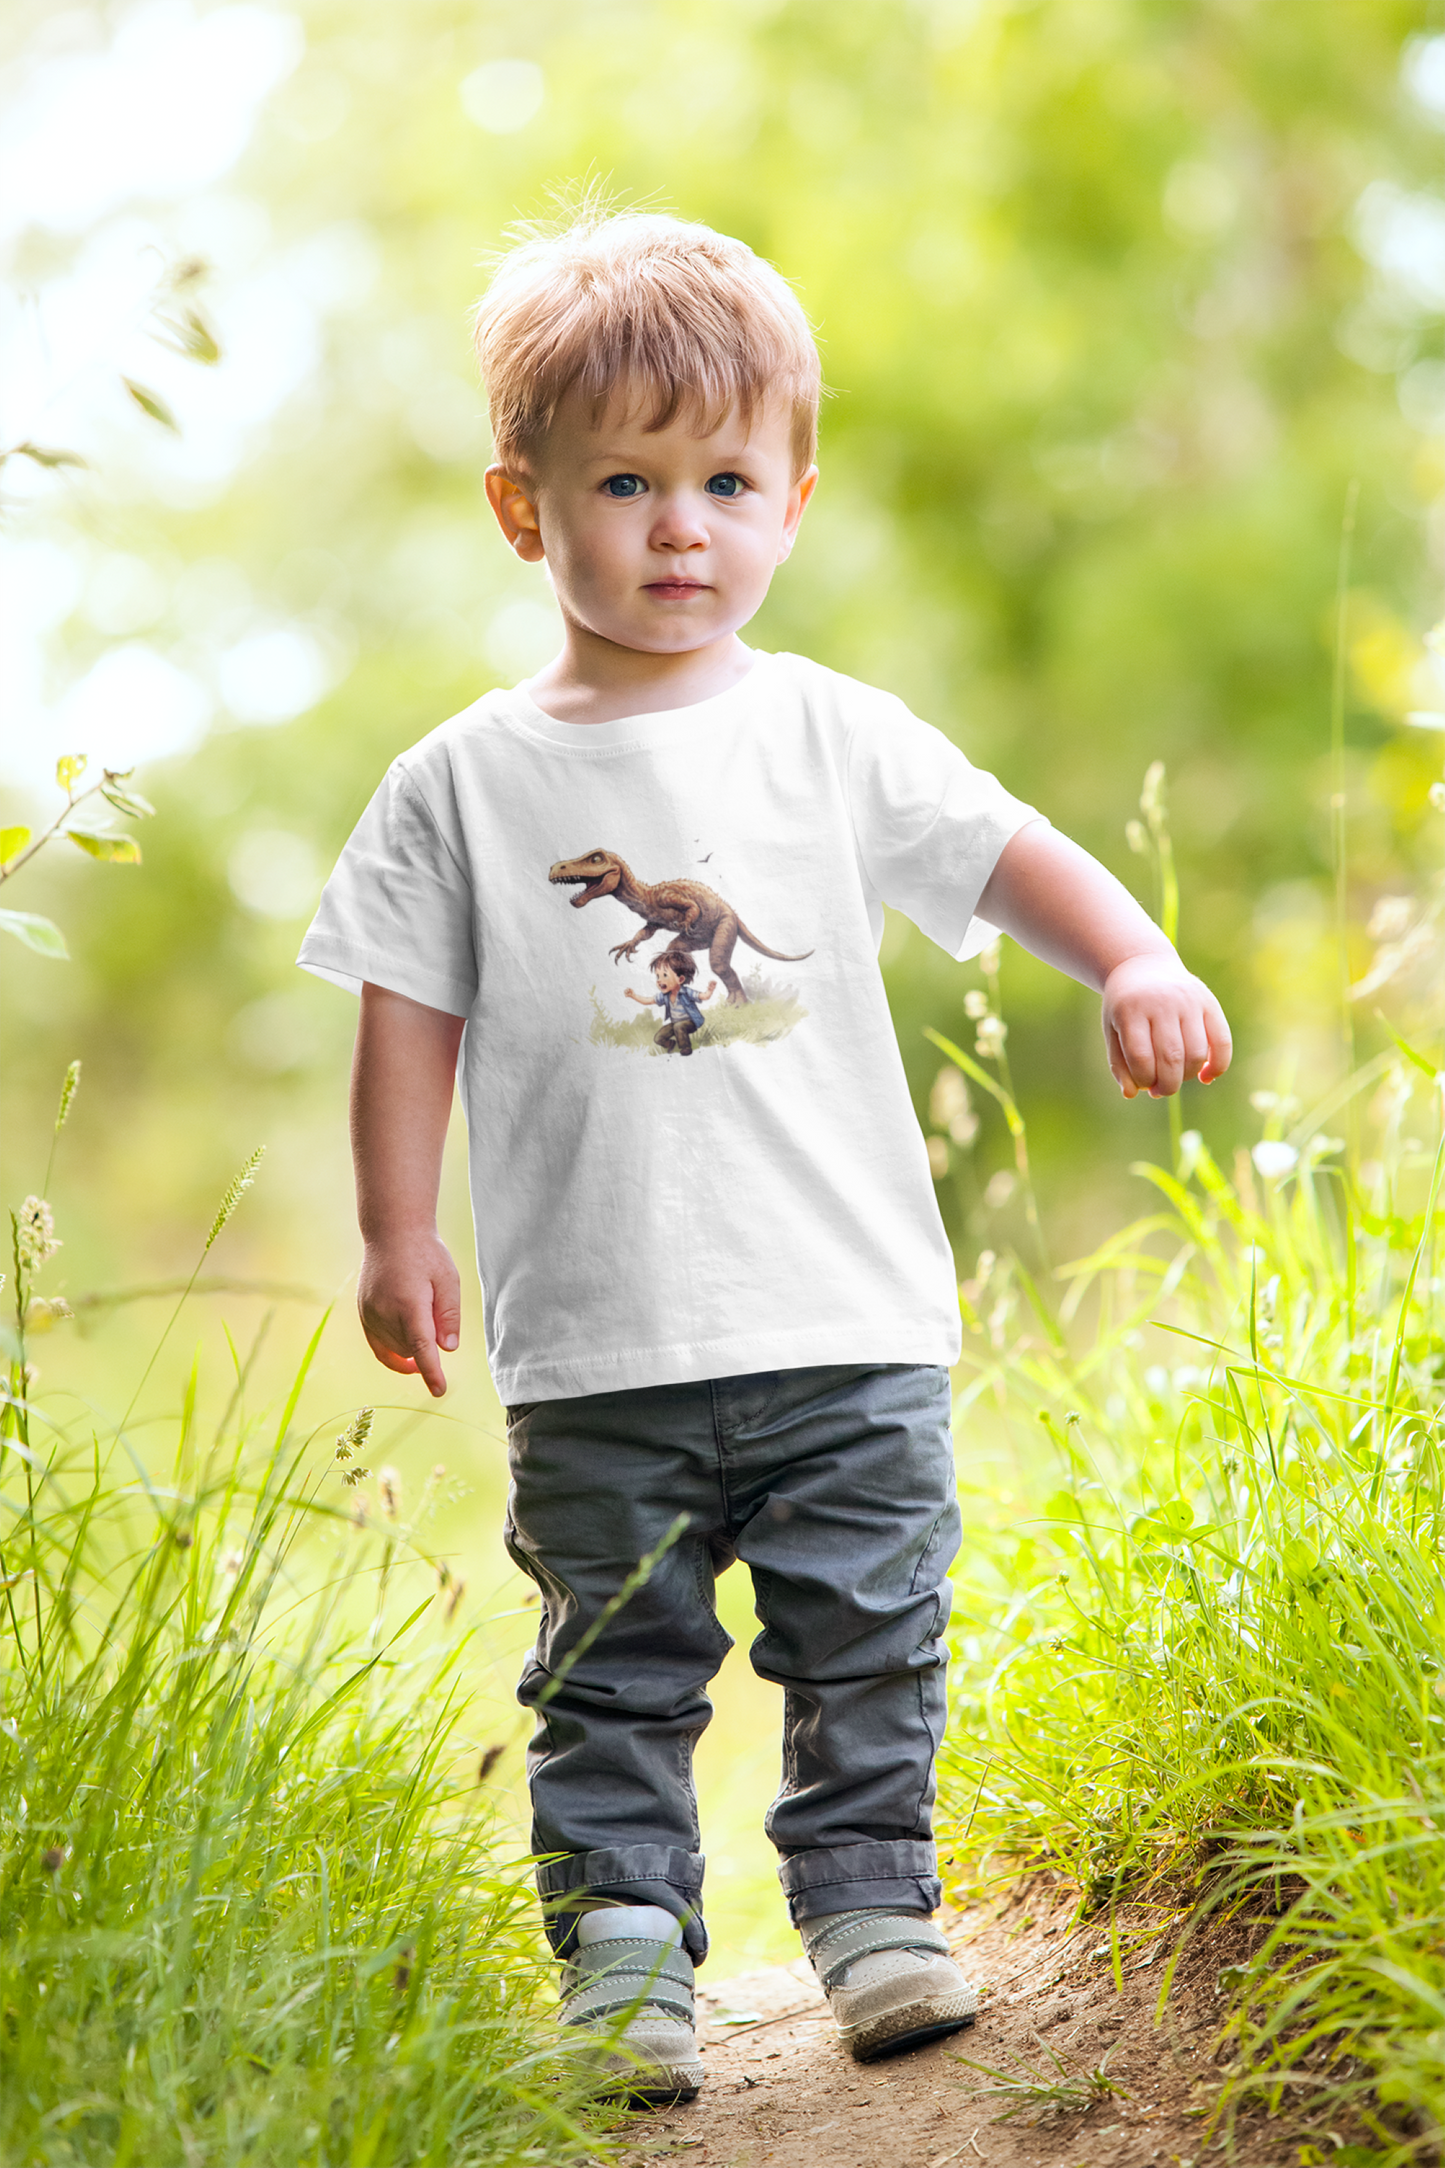 My Dog T-Rex Toddler's Fine Jersey Tee | Small Boy Tyrannosaurus Rex Dinosaur Lizard Best Friends T-shirt Top Big Dog